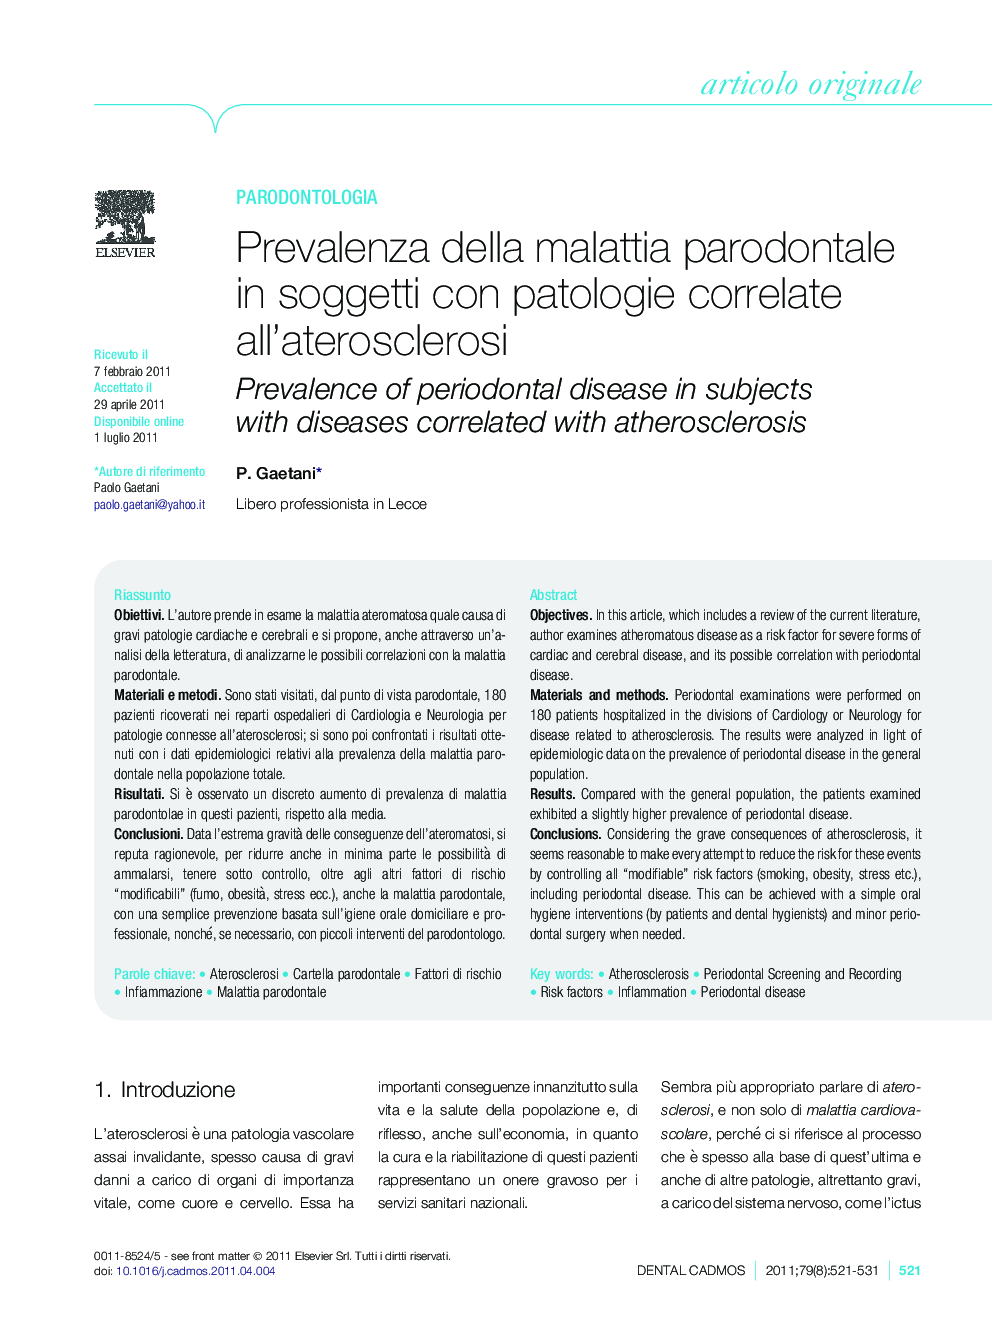 Prevalenza della malattia parodontale in soggetti con patologie correlate all'aterosclerosi